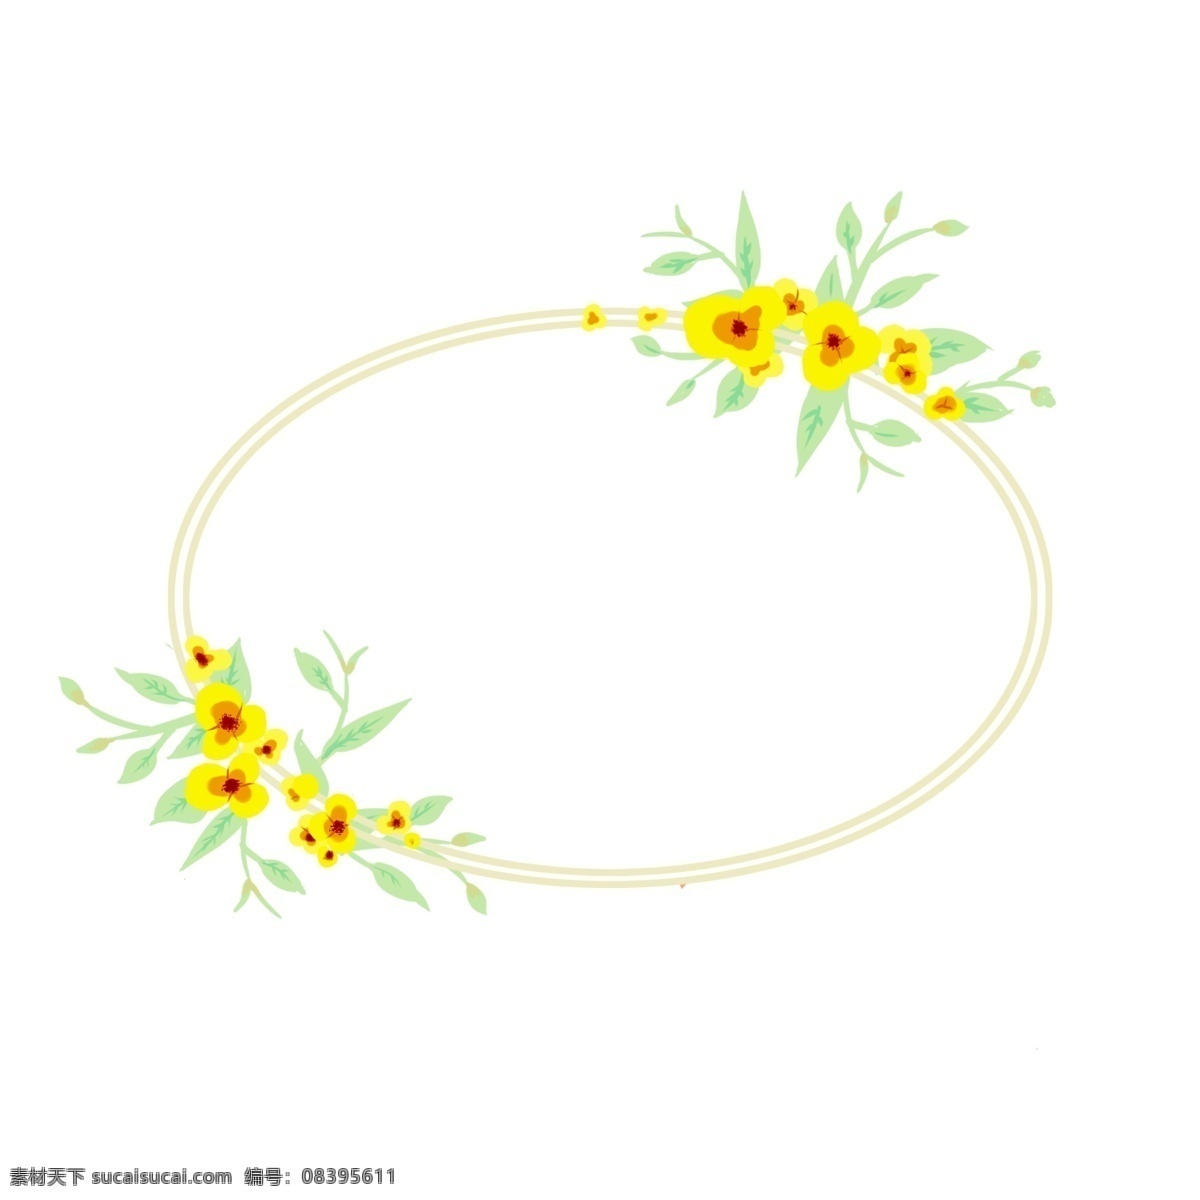 黄色 花朵 边框 插画 黄色的花朵 绽放的花朵 漂亮的花朵 卡通边框 漂亮的边框 美丽的边框 边框插画 小物边框